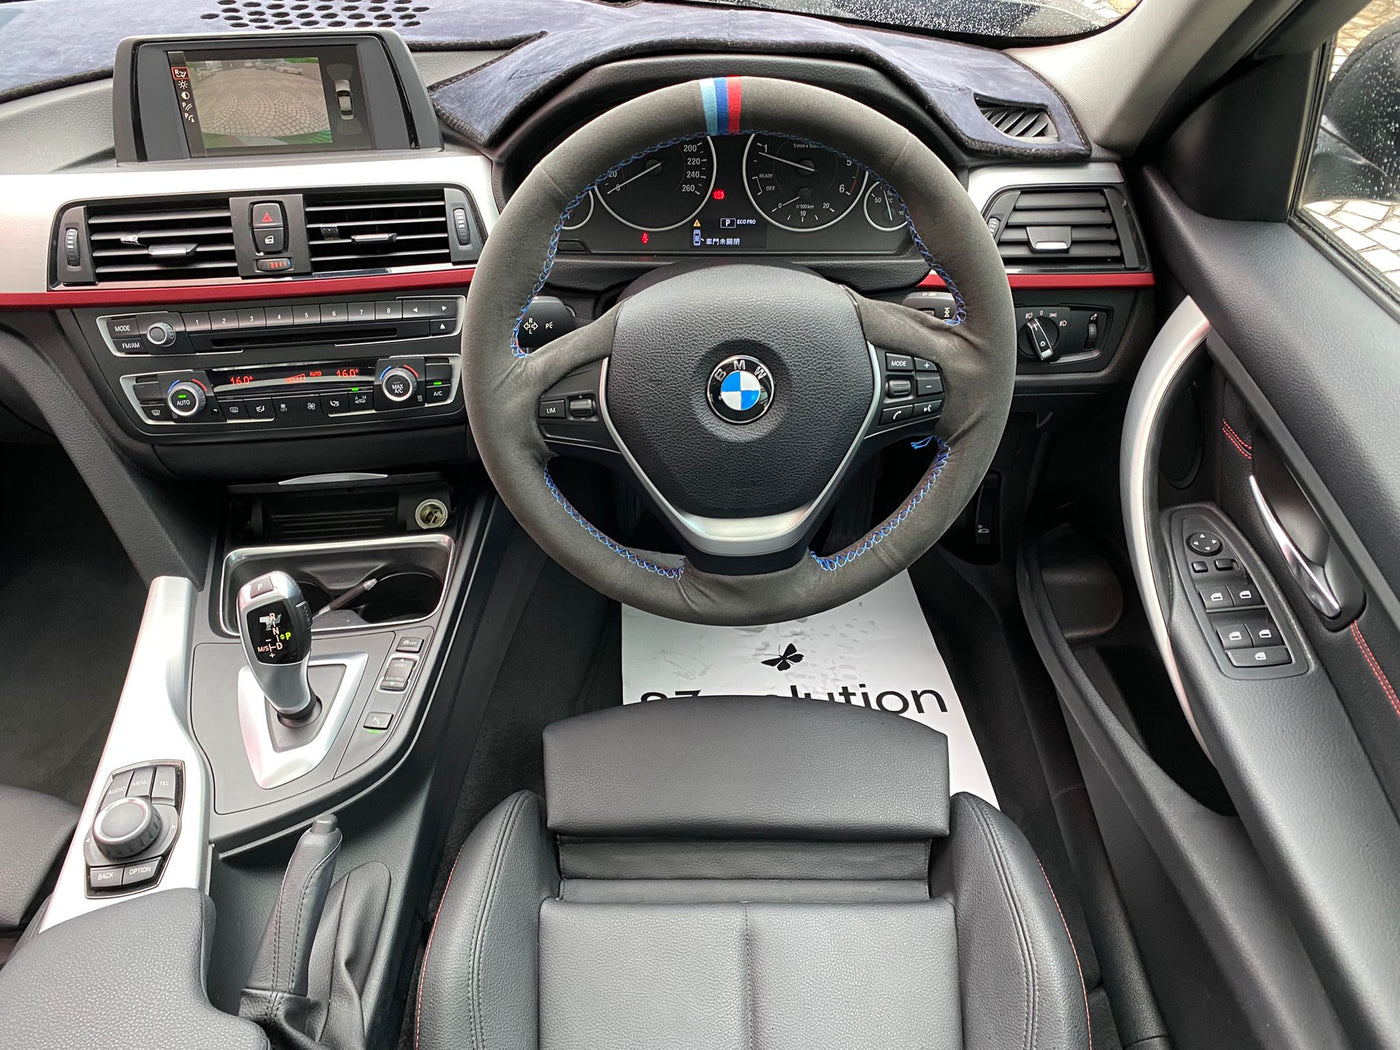 BMW 320D Sport 2014